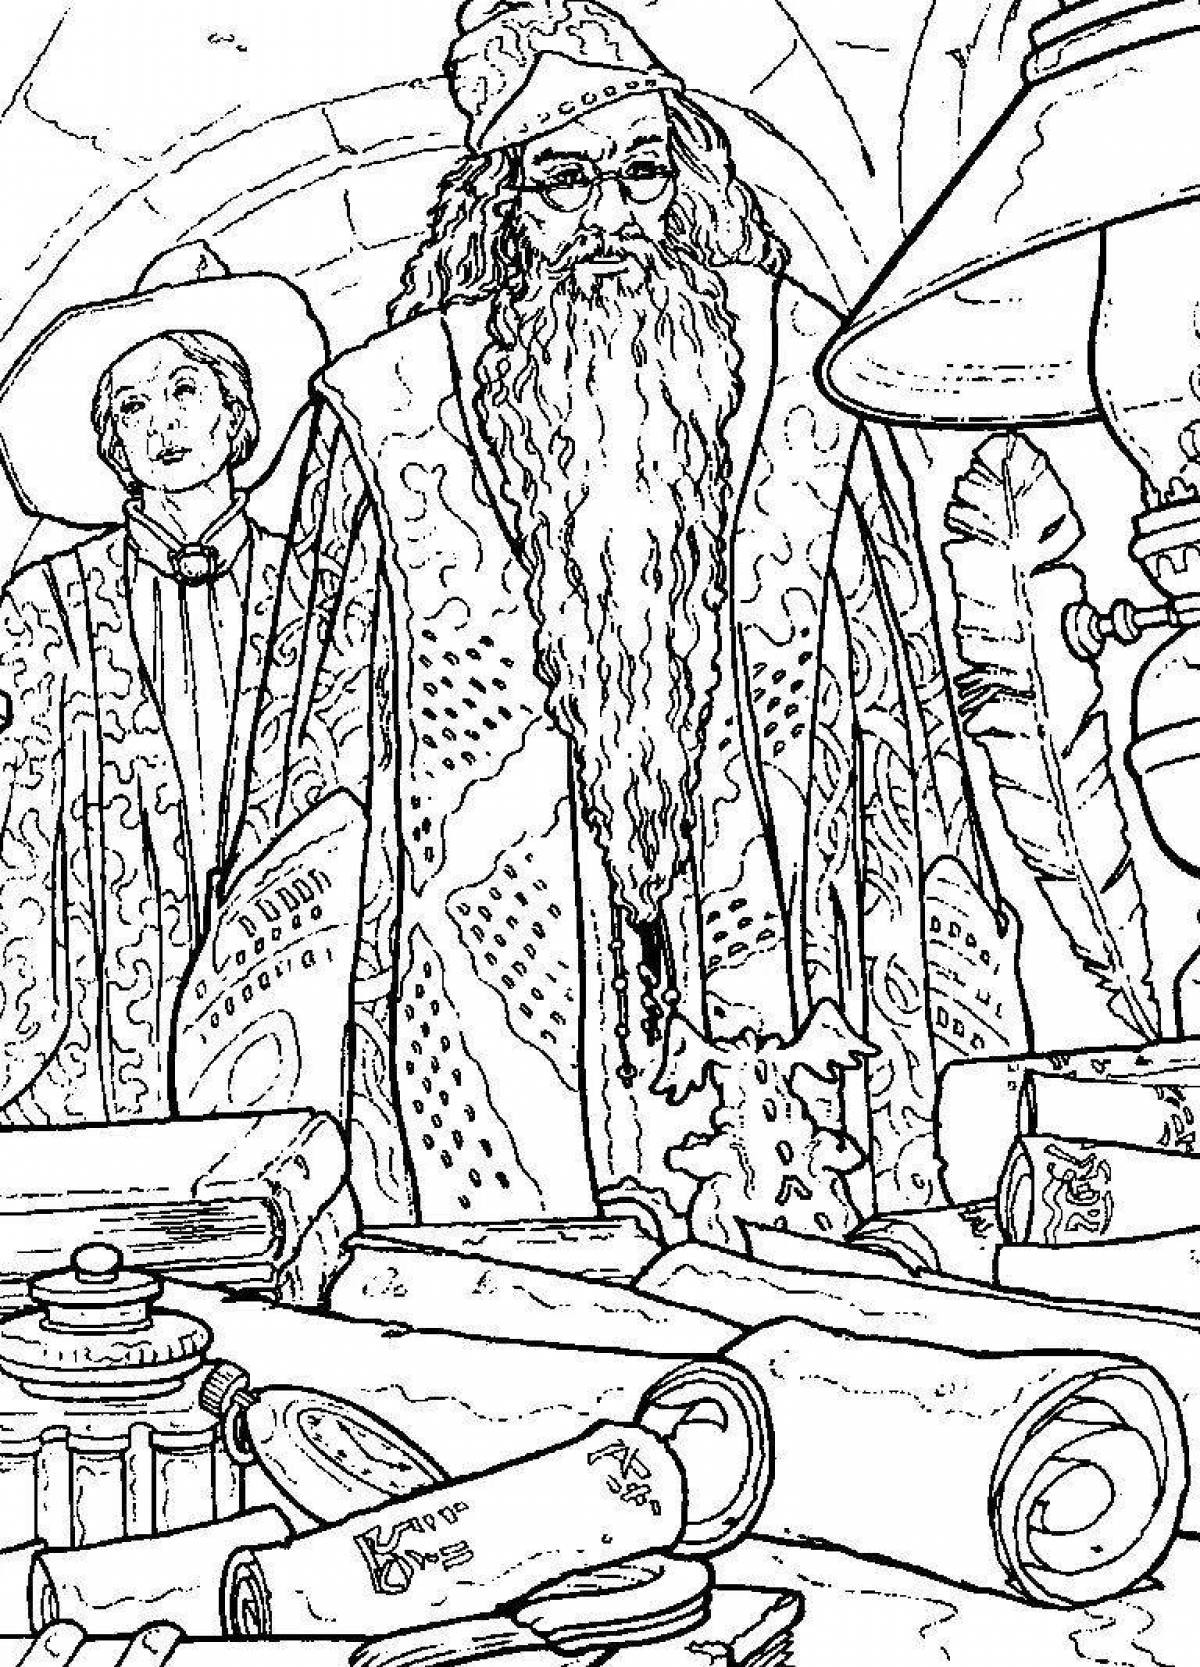 Dumbledore's shiny coloring book